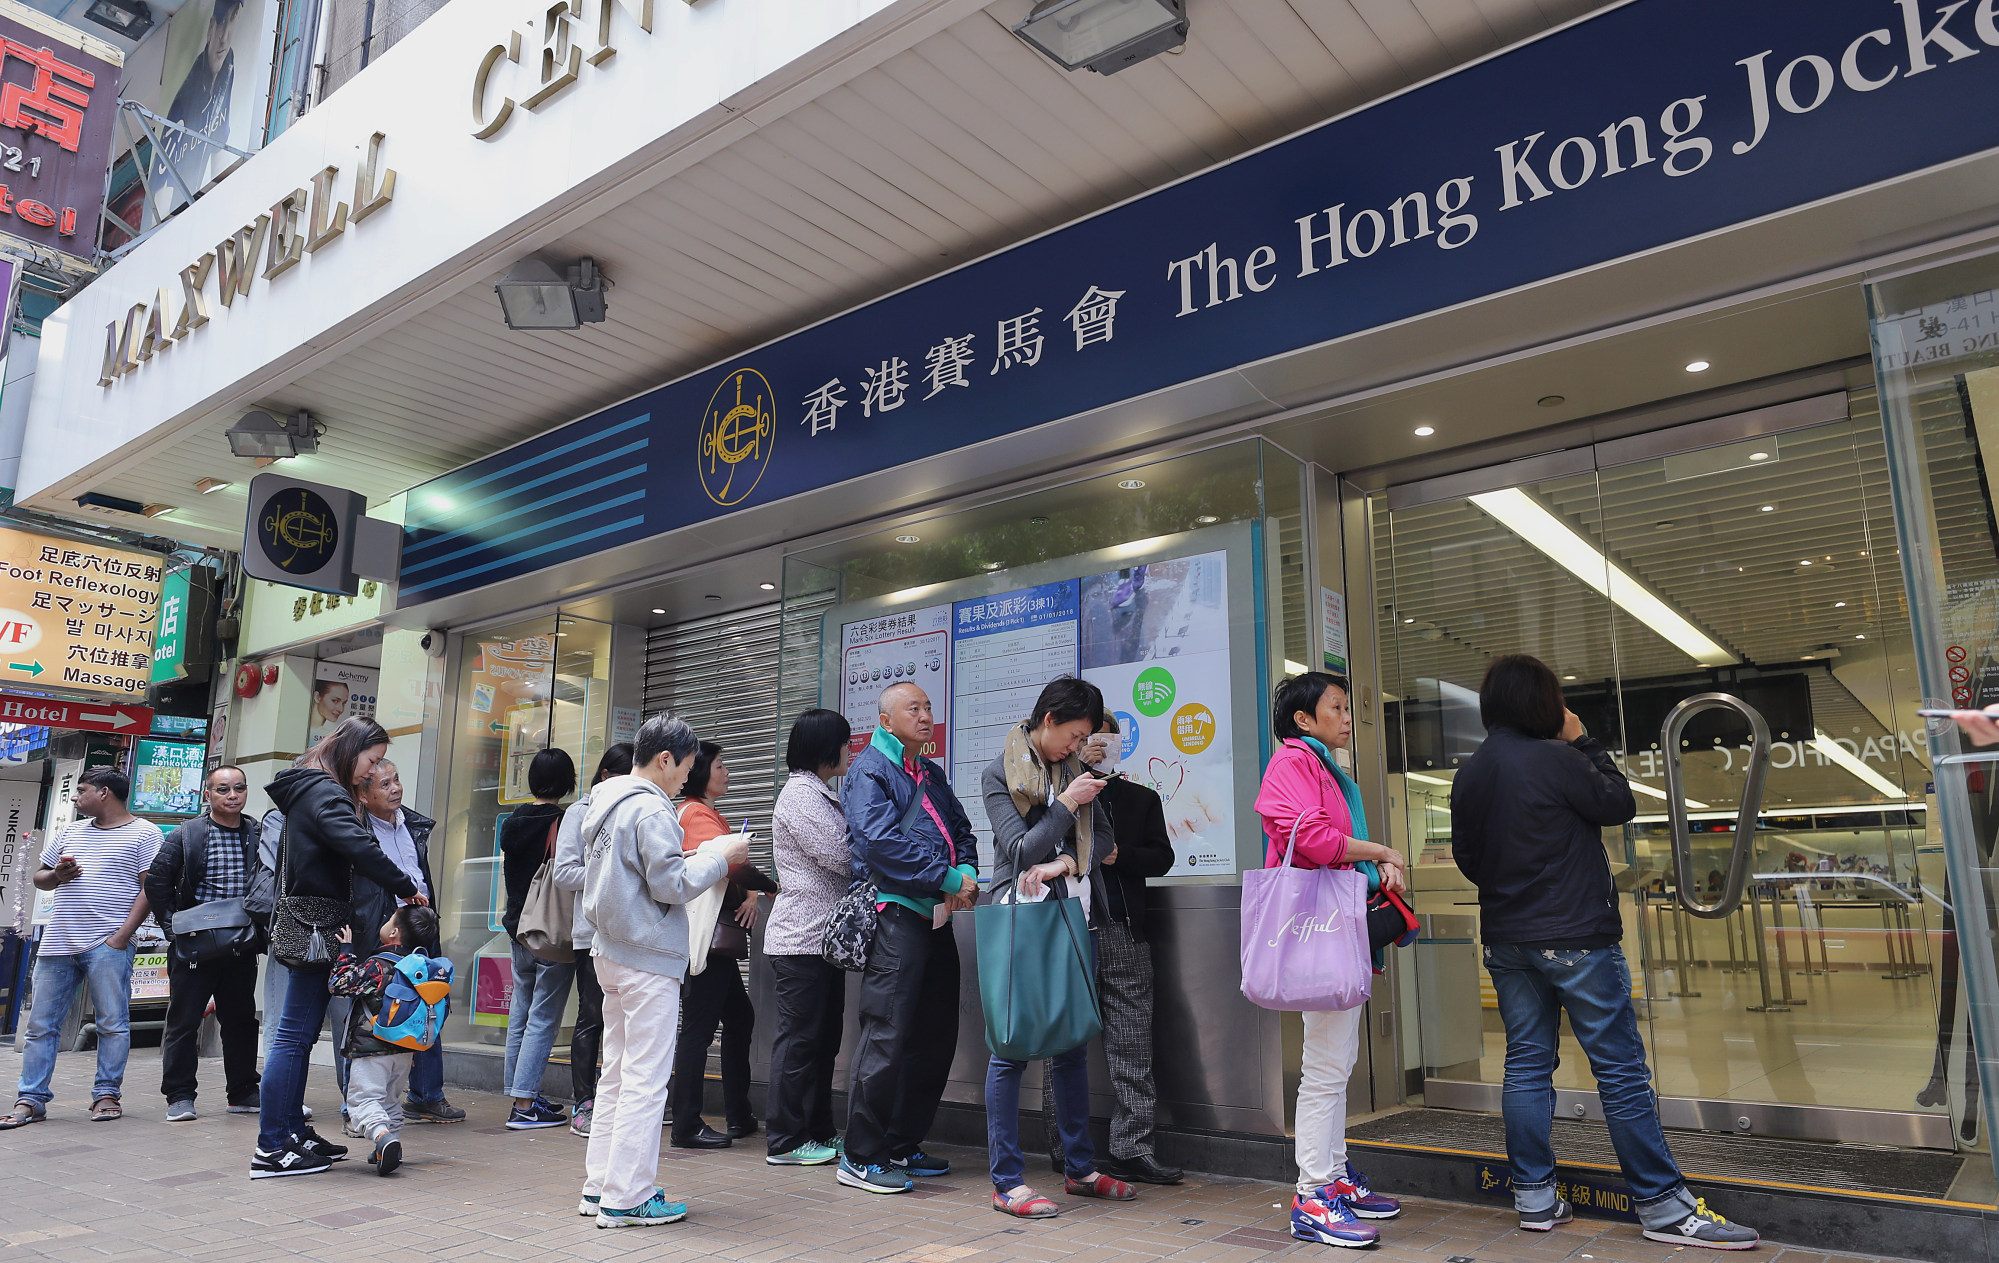 El Jockey Club de Hong Kong ha recaudado 5 mil millones de dólares de Hong Kong para impulsar la eficacia filantrópica en la ciudad, la región y más allá.